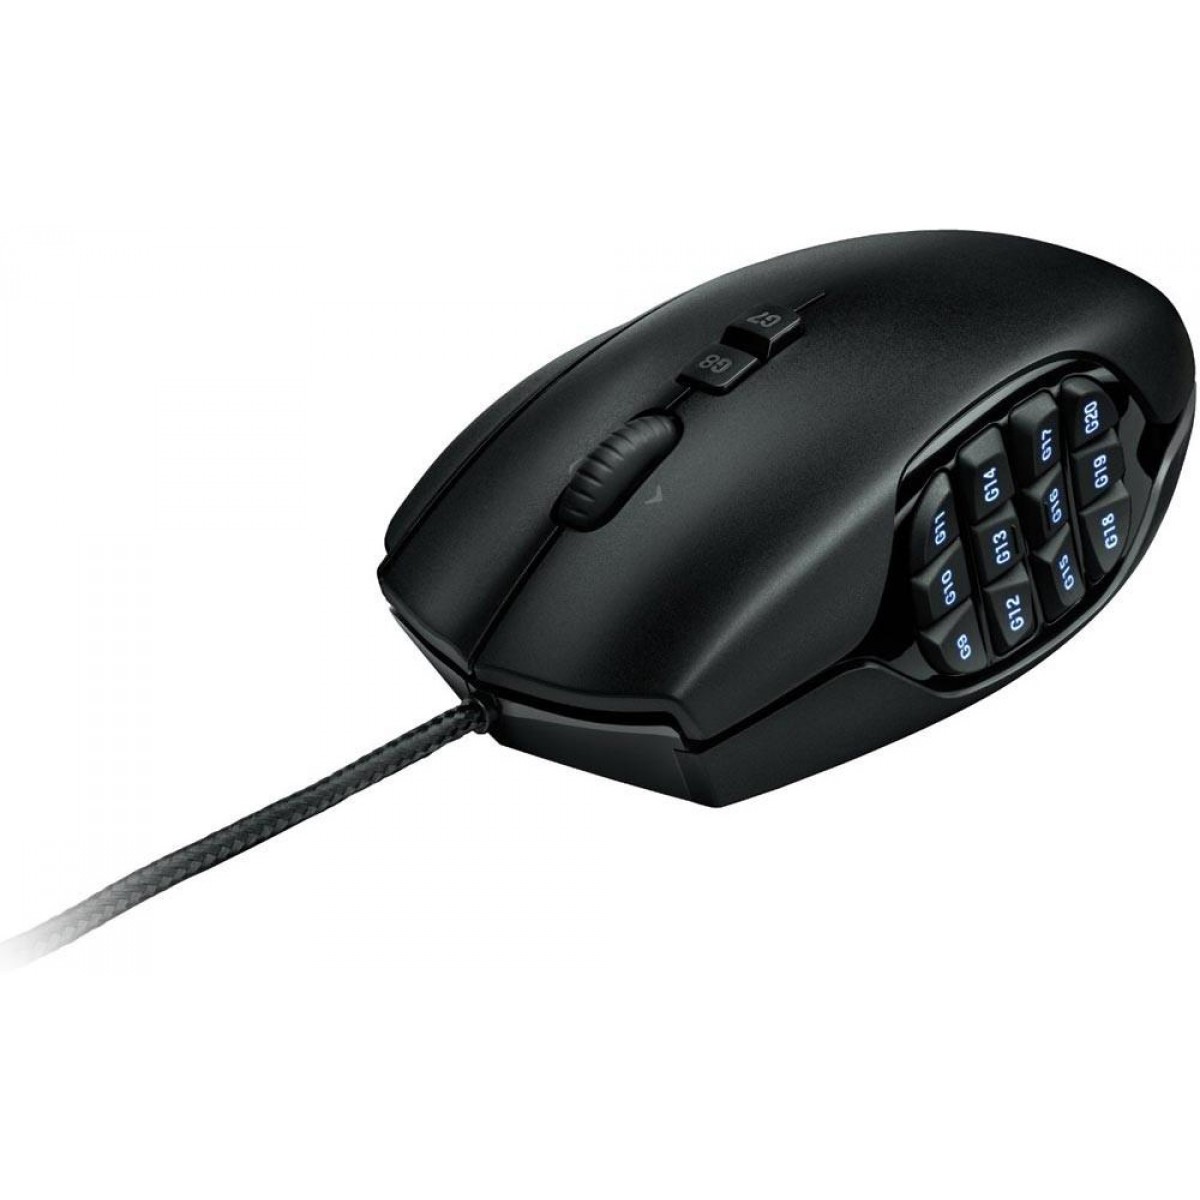 Mouse Gamer Logitech G600 MMO, 8200 DPI, 20 botões, Black, 910-003879